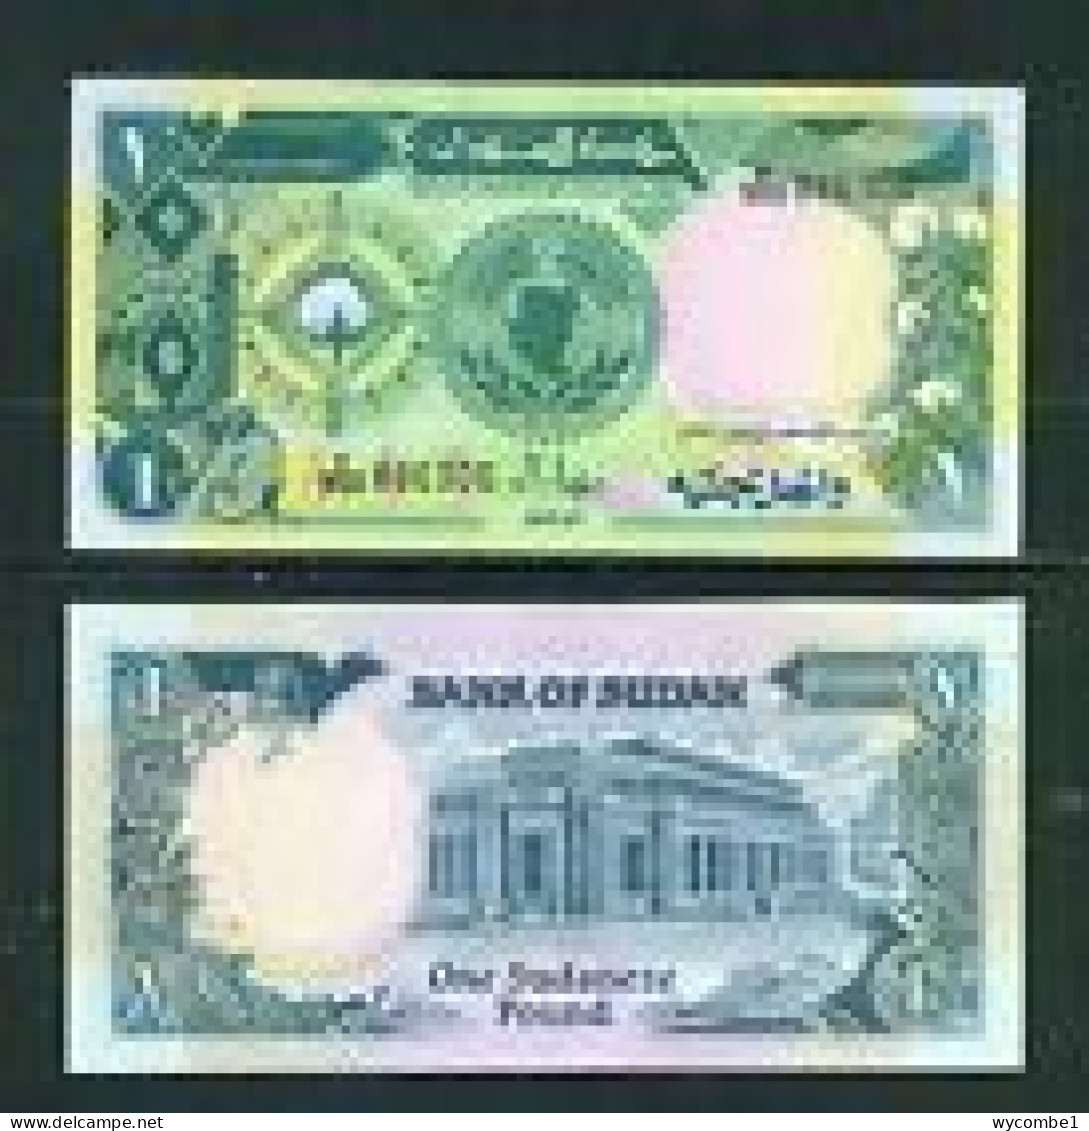 SUDAN - 1985 1 Pound UNC - Sudan